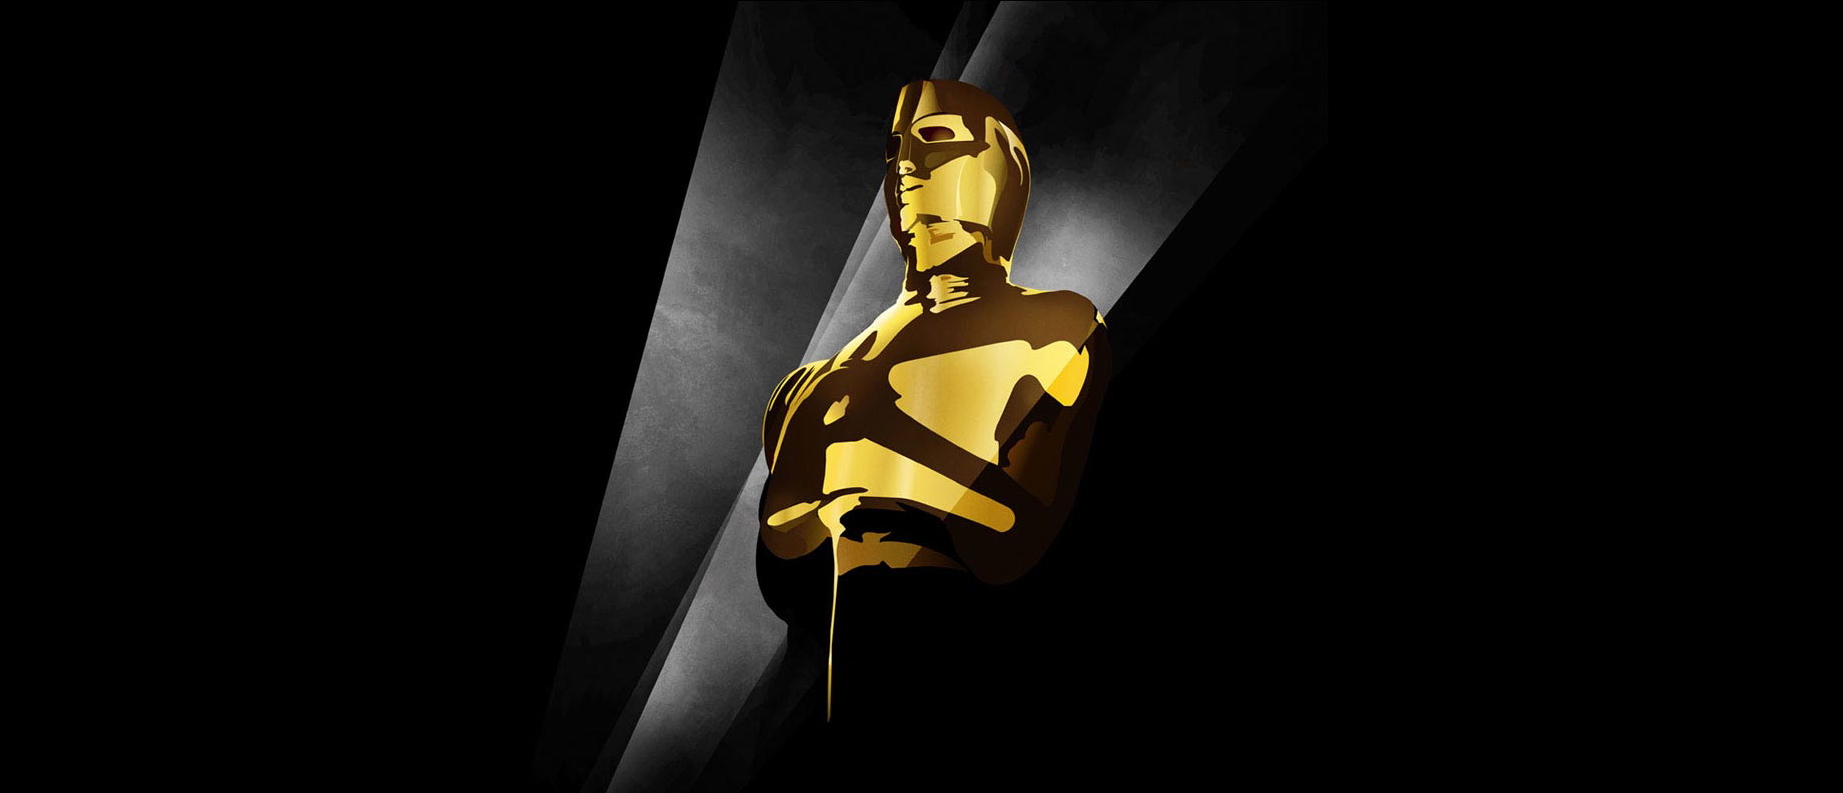 Et utsnitt av årets Oscar-plakat